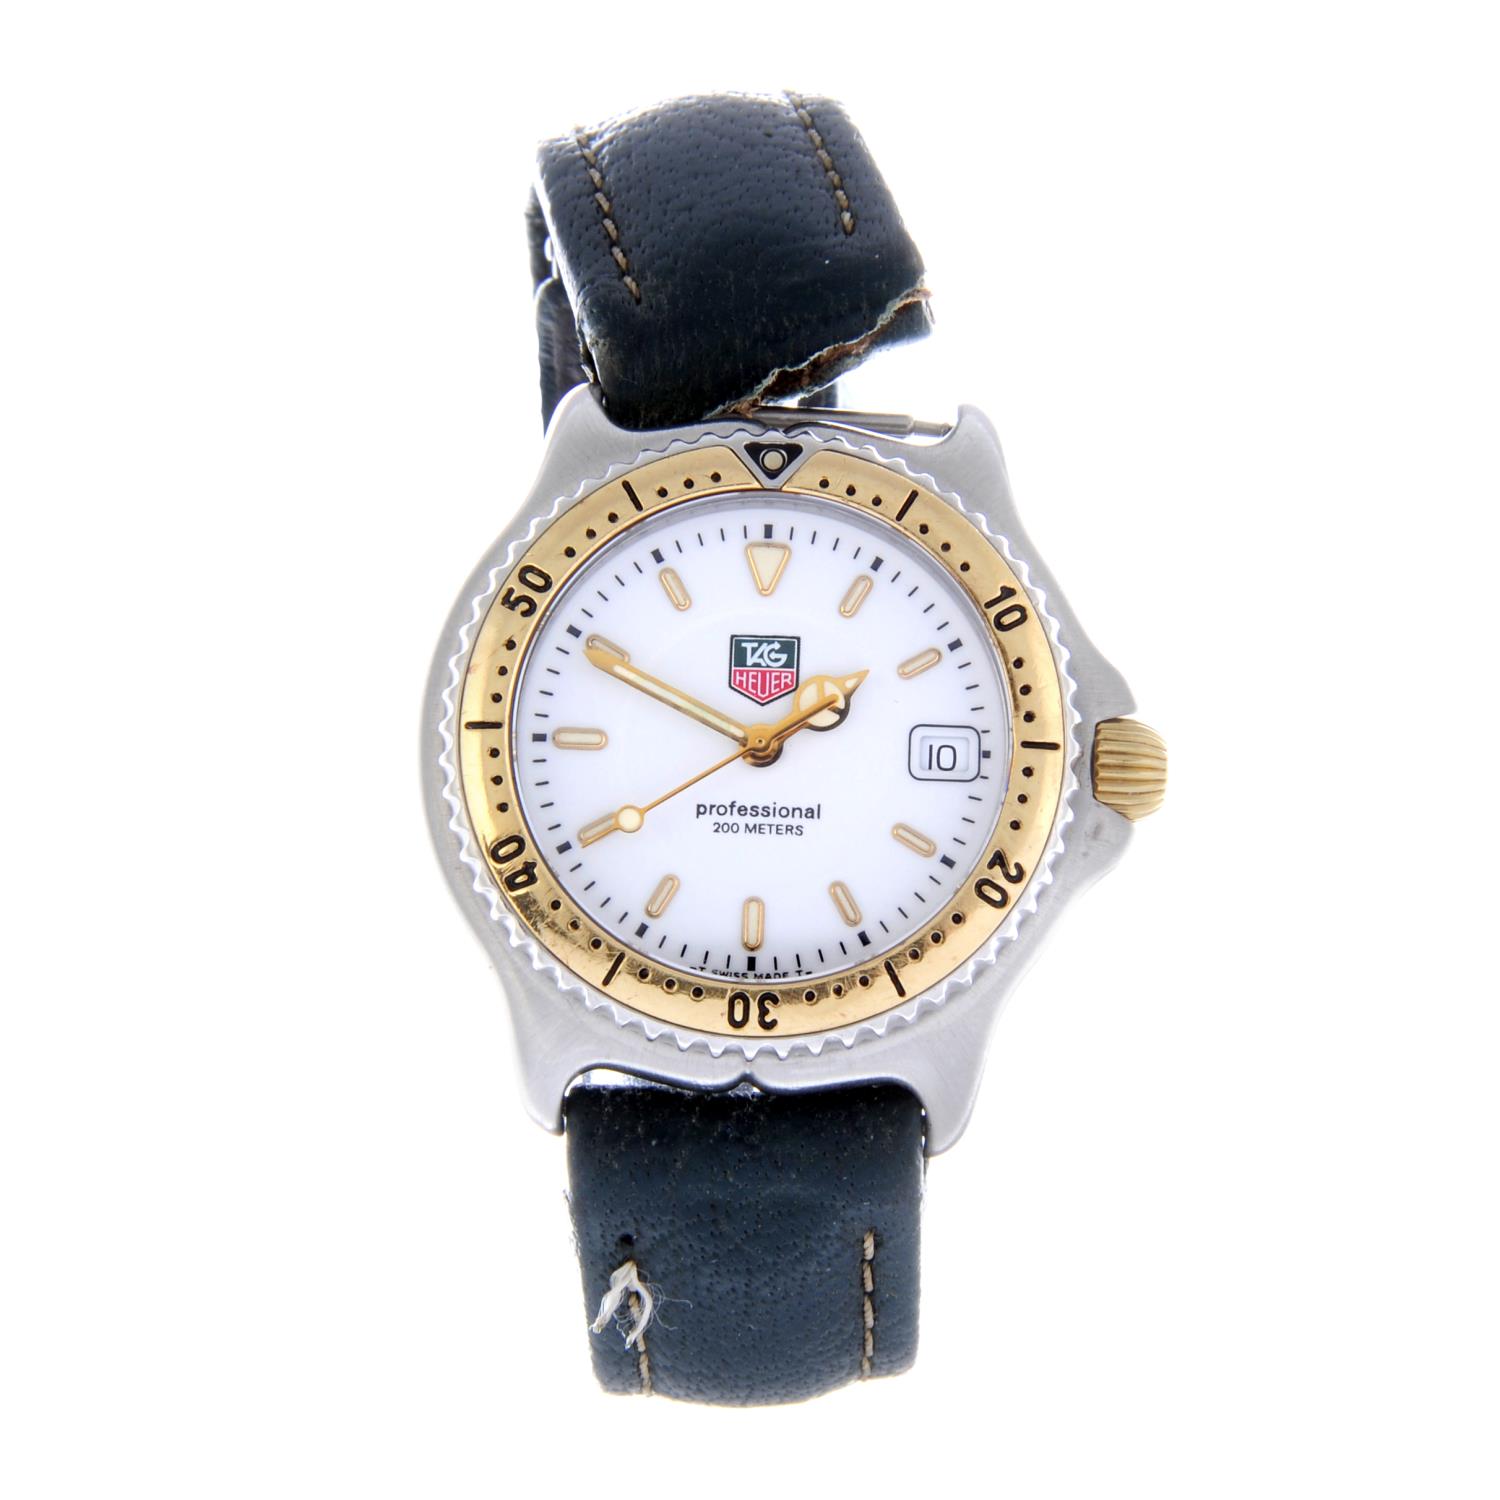 TAG HEUER - a gentleman's S/el wrist watch.